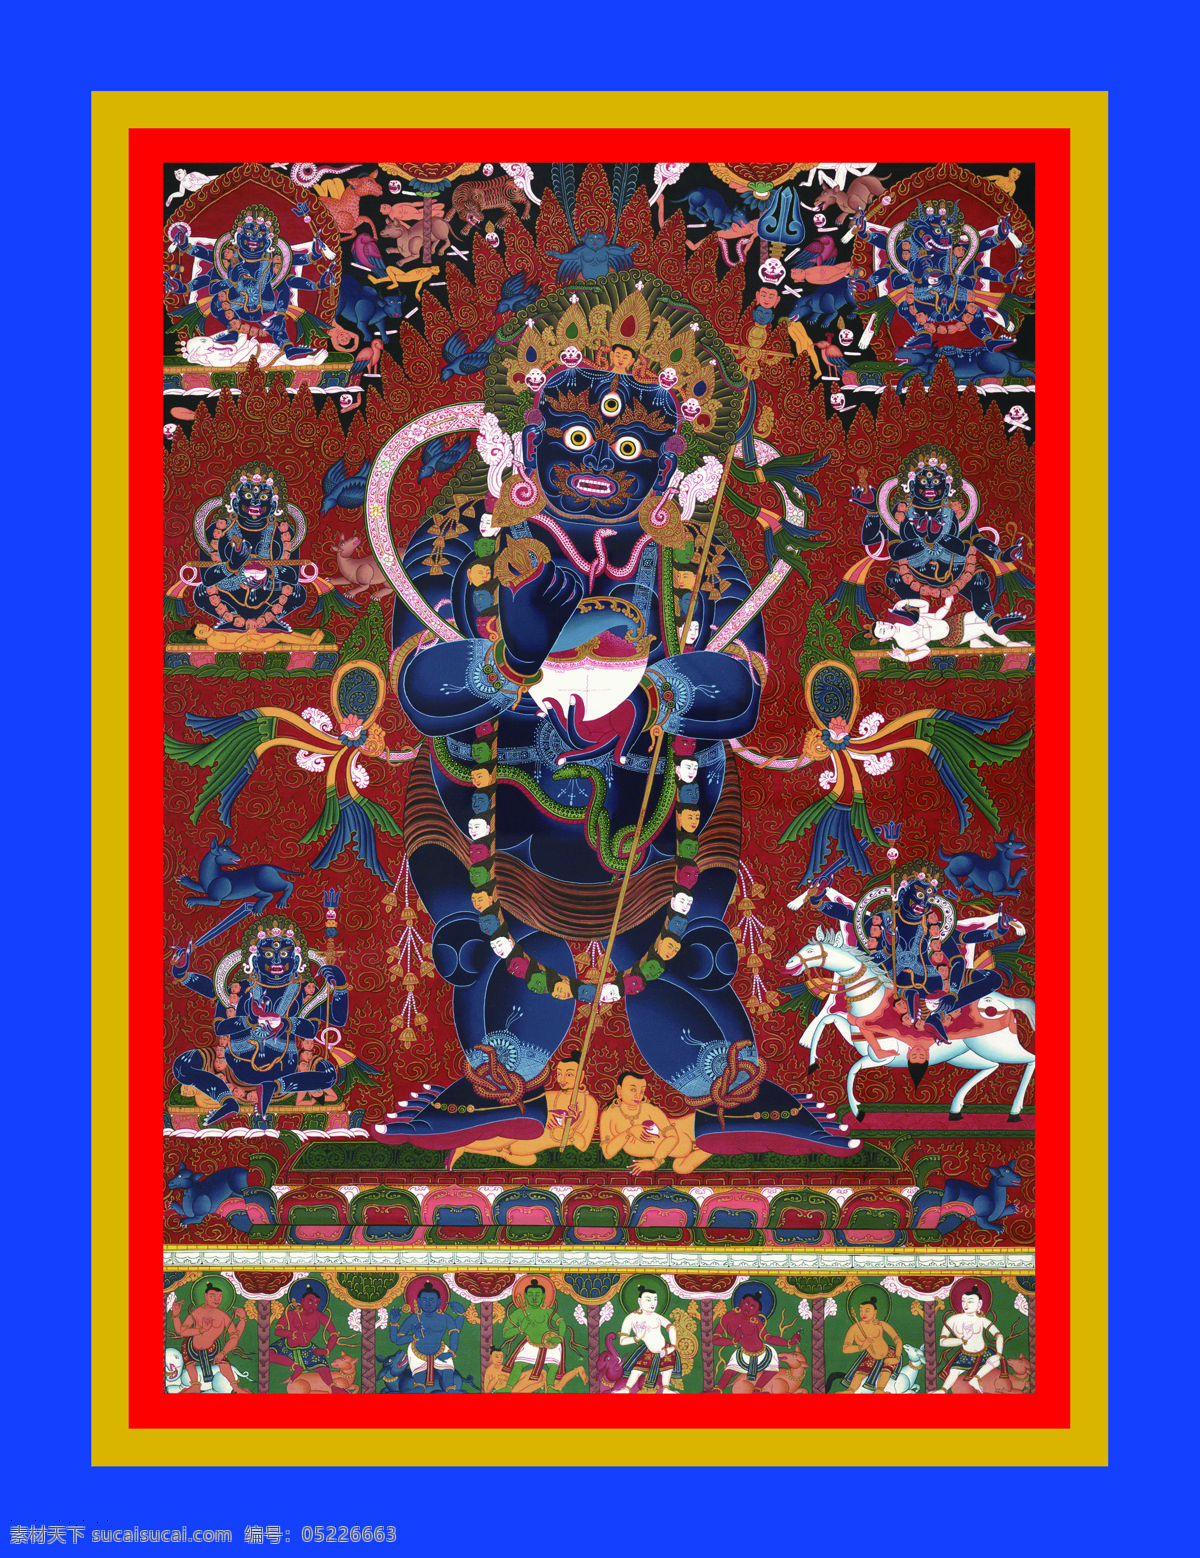 两臂大黑天 唐卡 老唐卡 传承 西藏 藏传 佛教 密宗 法器 佛 菩萨 成就 成就者 大德 喇嘛 活佛 两臂 大黑天 宗教信仰 文化艺术